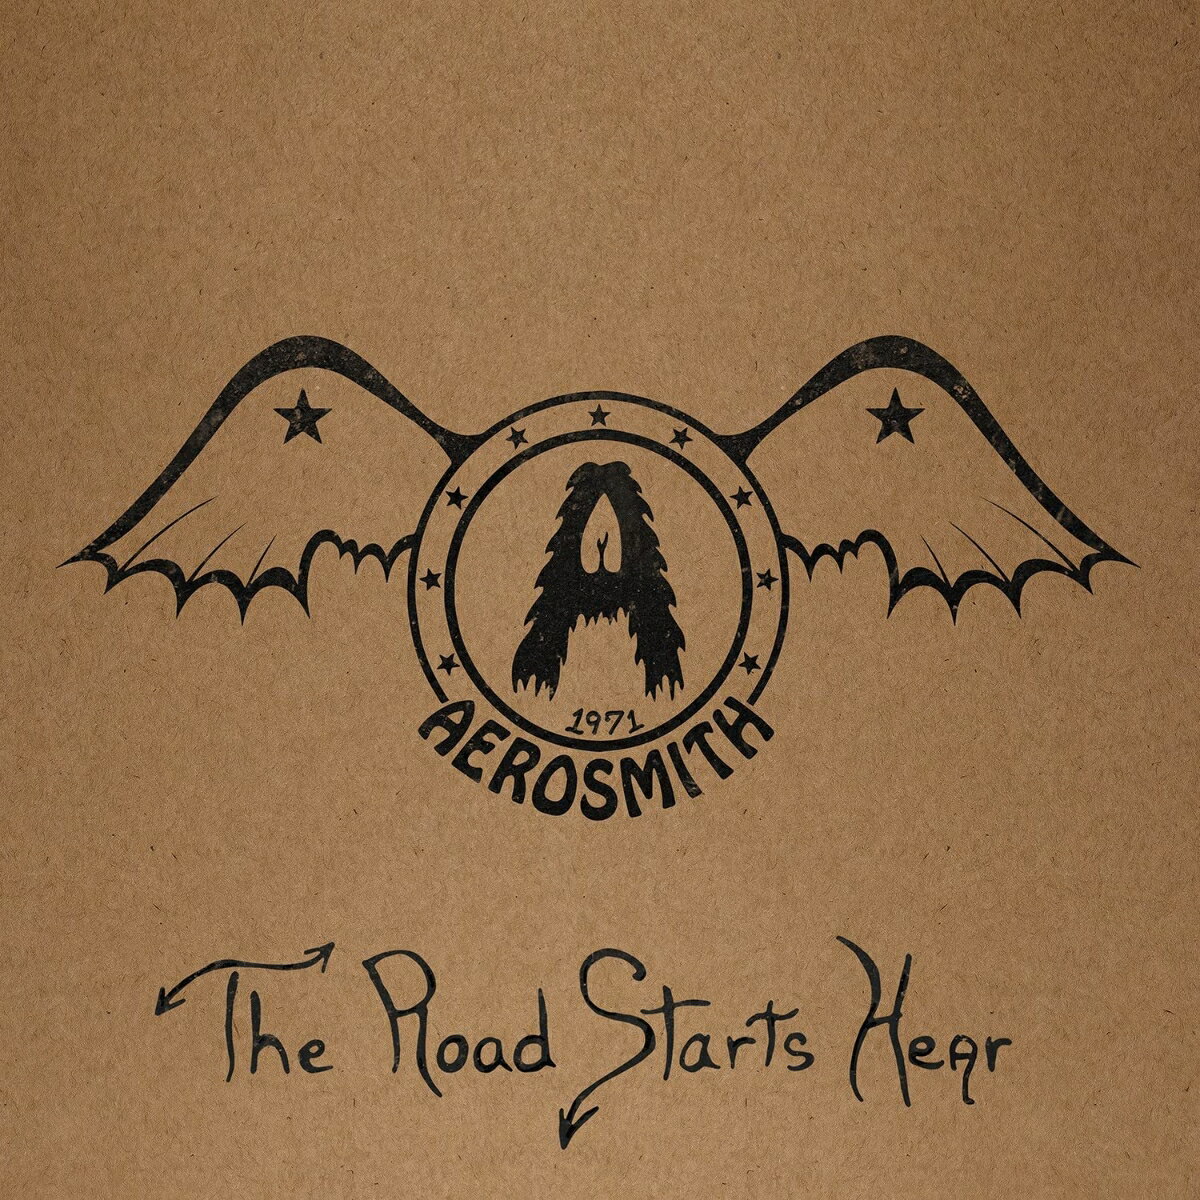 エアロスミス、デビュー前の貴重音源『1971: The Road Starts Hear』が彼らの50周年記念として、初CD商品化。

1971年に録音されたこの貴重な音源は、最近発見されたもので、もともとは2021年秋のレコード・ストア・デイのためにカセットとレコードのみの限定盤として発売されていた。

＜収録内容＞
1. Intro ? Somebody (Featured on Aerosmith's eponymous major label debut in 1973)
2. Reefer Head Woman (Featured on 'Night In The Ruts'' 1979)
3. Walking The Dog (Featured on Aerosmith's eponymous major label debut in 1973)
4. Movin' Out (Featured on Aerosmith's eponymous major label debut in 1973)
5. Major Barbra (Featured on 'Classics Live' 1986)
6. Dream On (Featured on Aerosmith's eponymous major label debut in 1973)
7. Mama Kin (Featured on Aerosmith's eponymous major label debut in 1973)